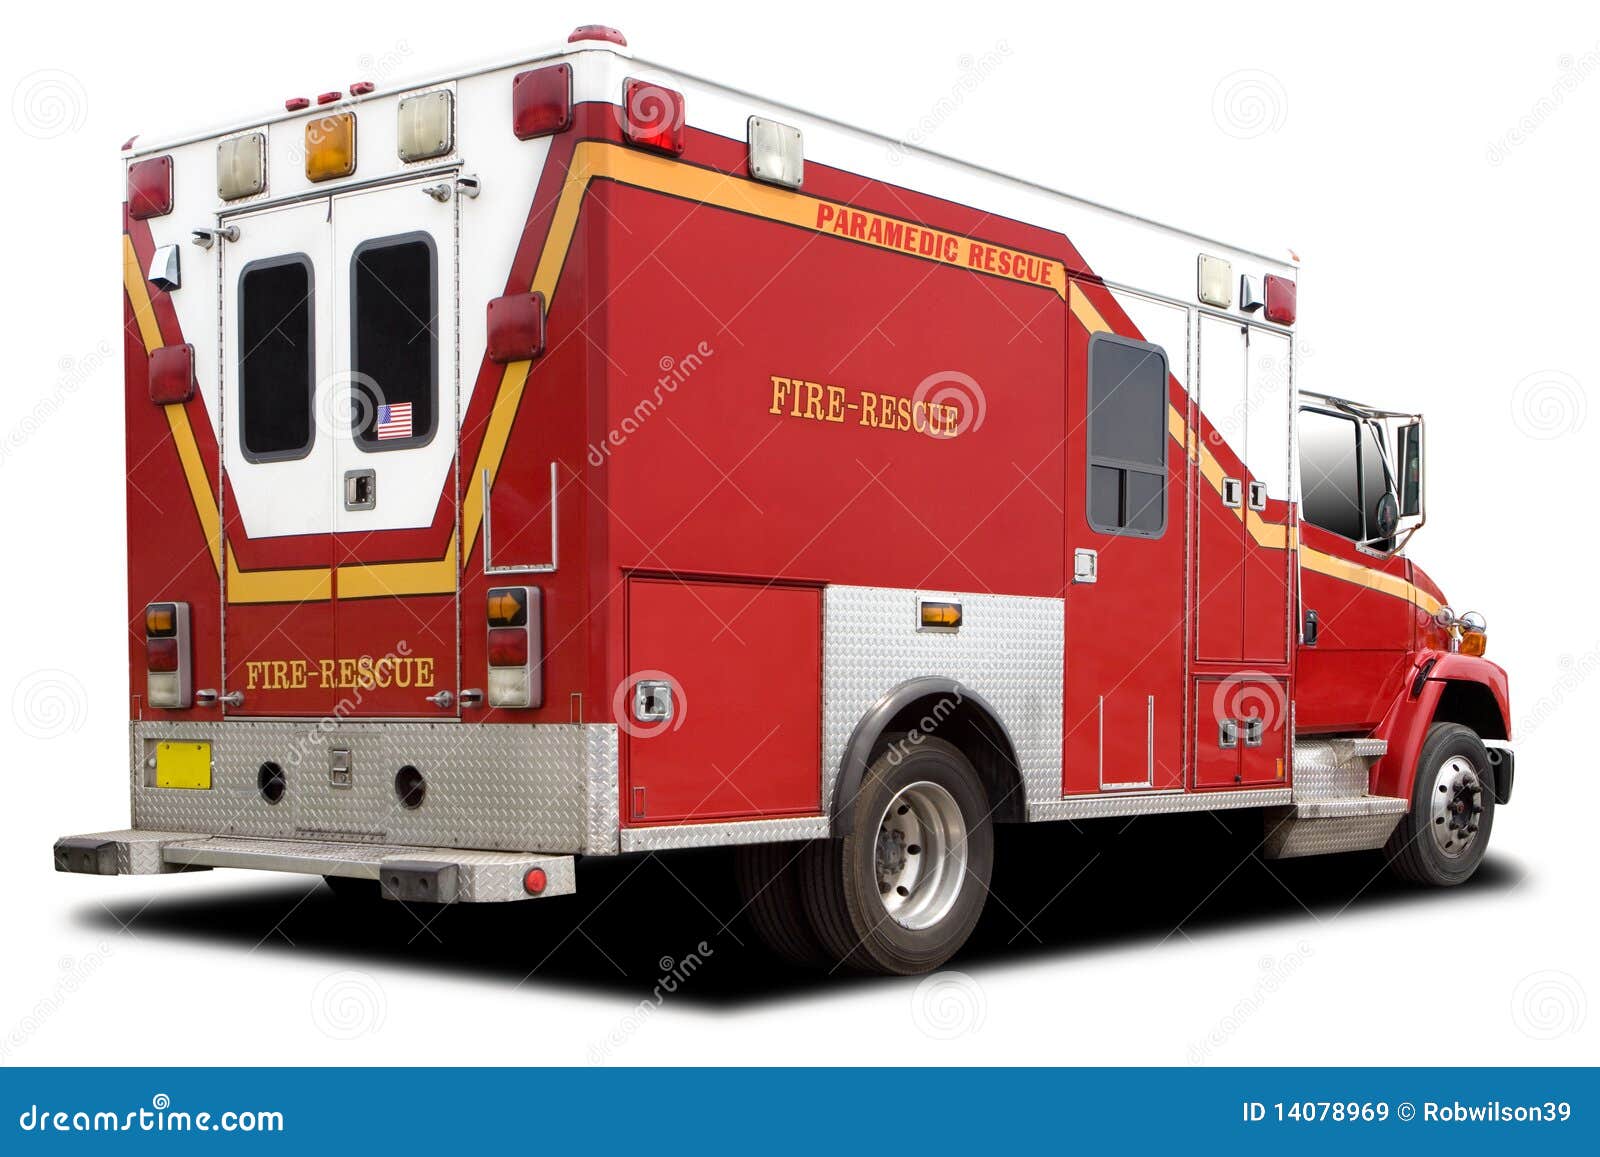 Bb67 camión de rescate ambulancia Cruz Roja Patch perchas imagen auto administración 